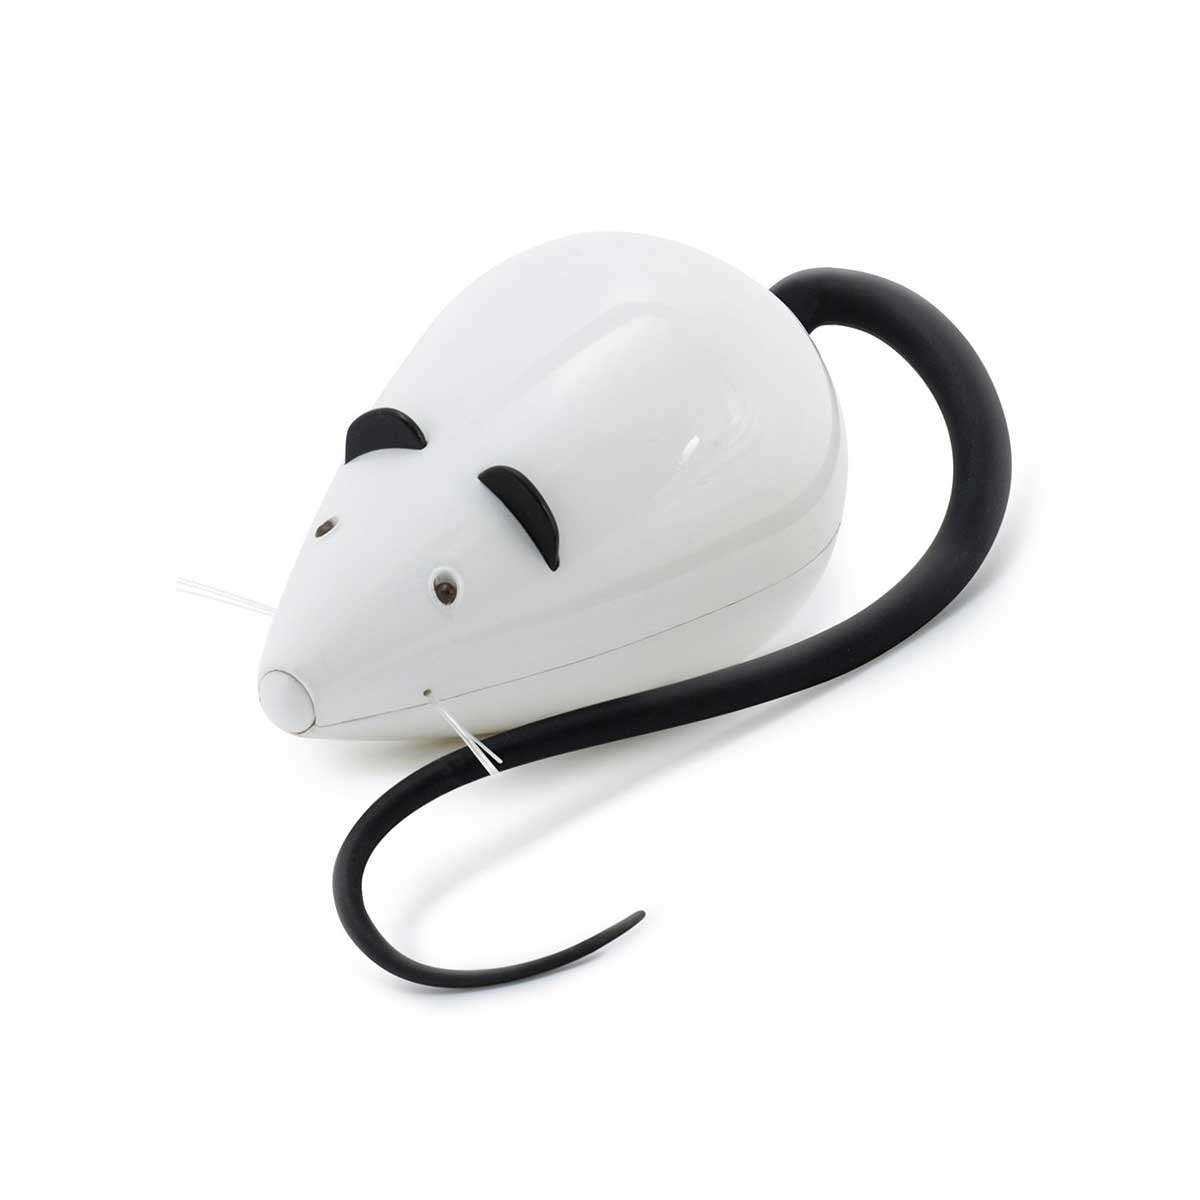 FroliCat Automatic Mouse RoloRat